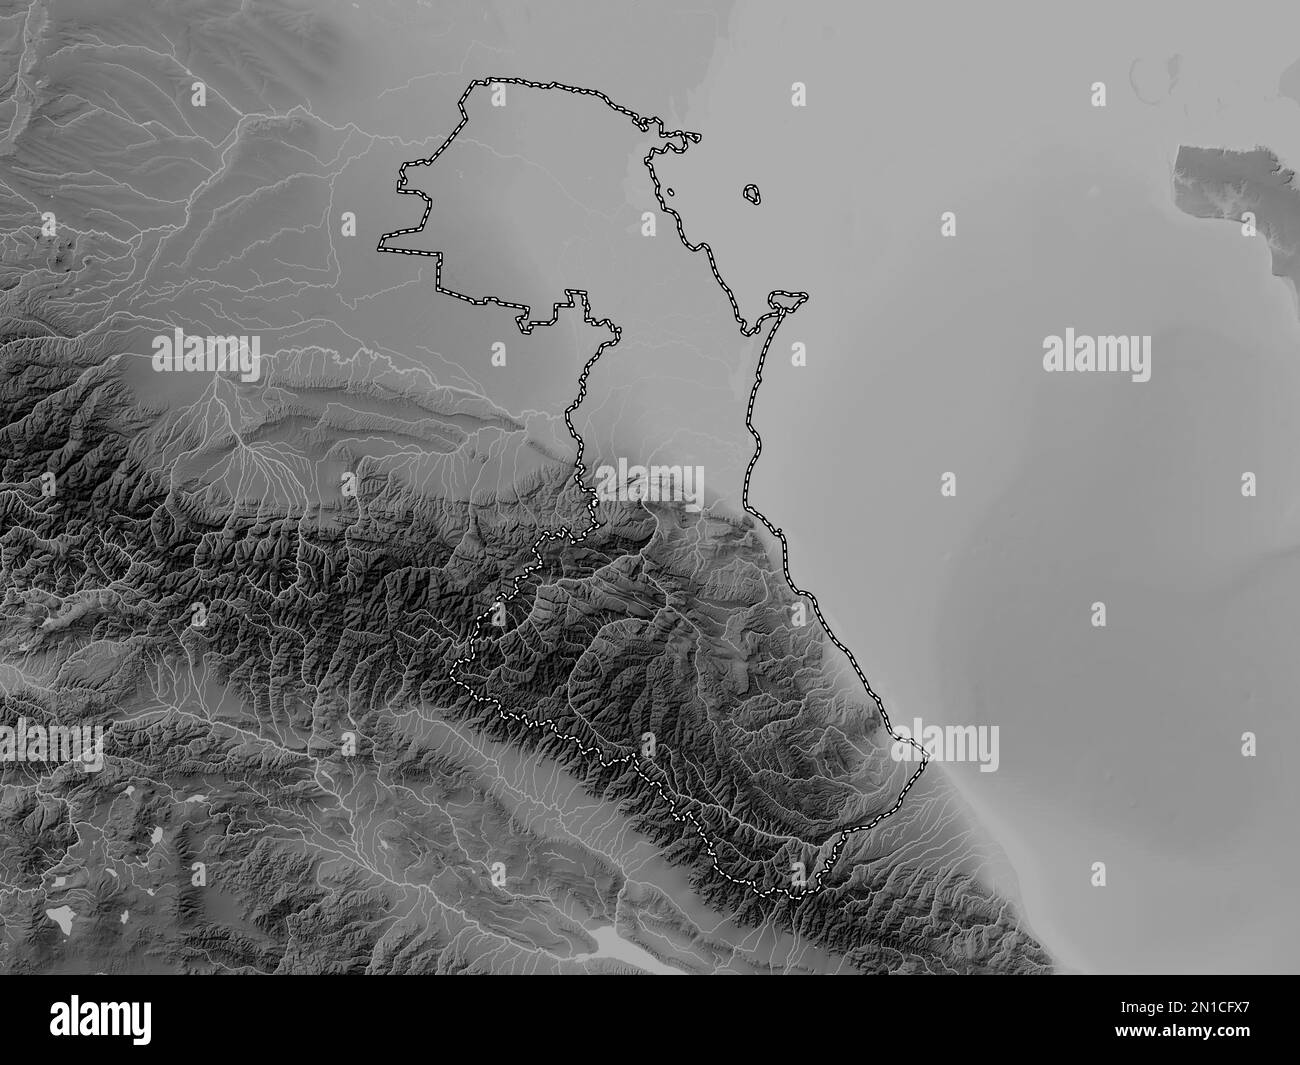 Dagestan, repubblica di Russia. Mappa in scala di grigi con laghi e fiumi Foto Stock